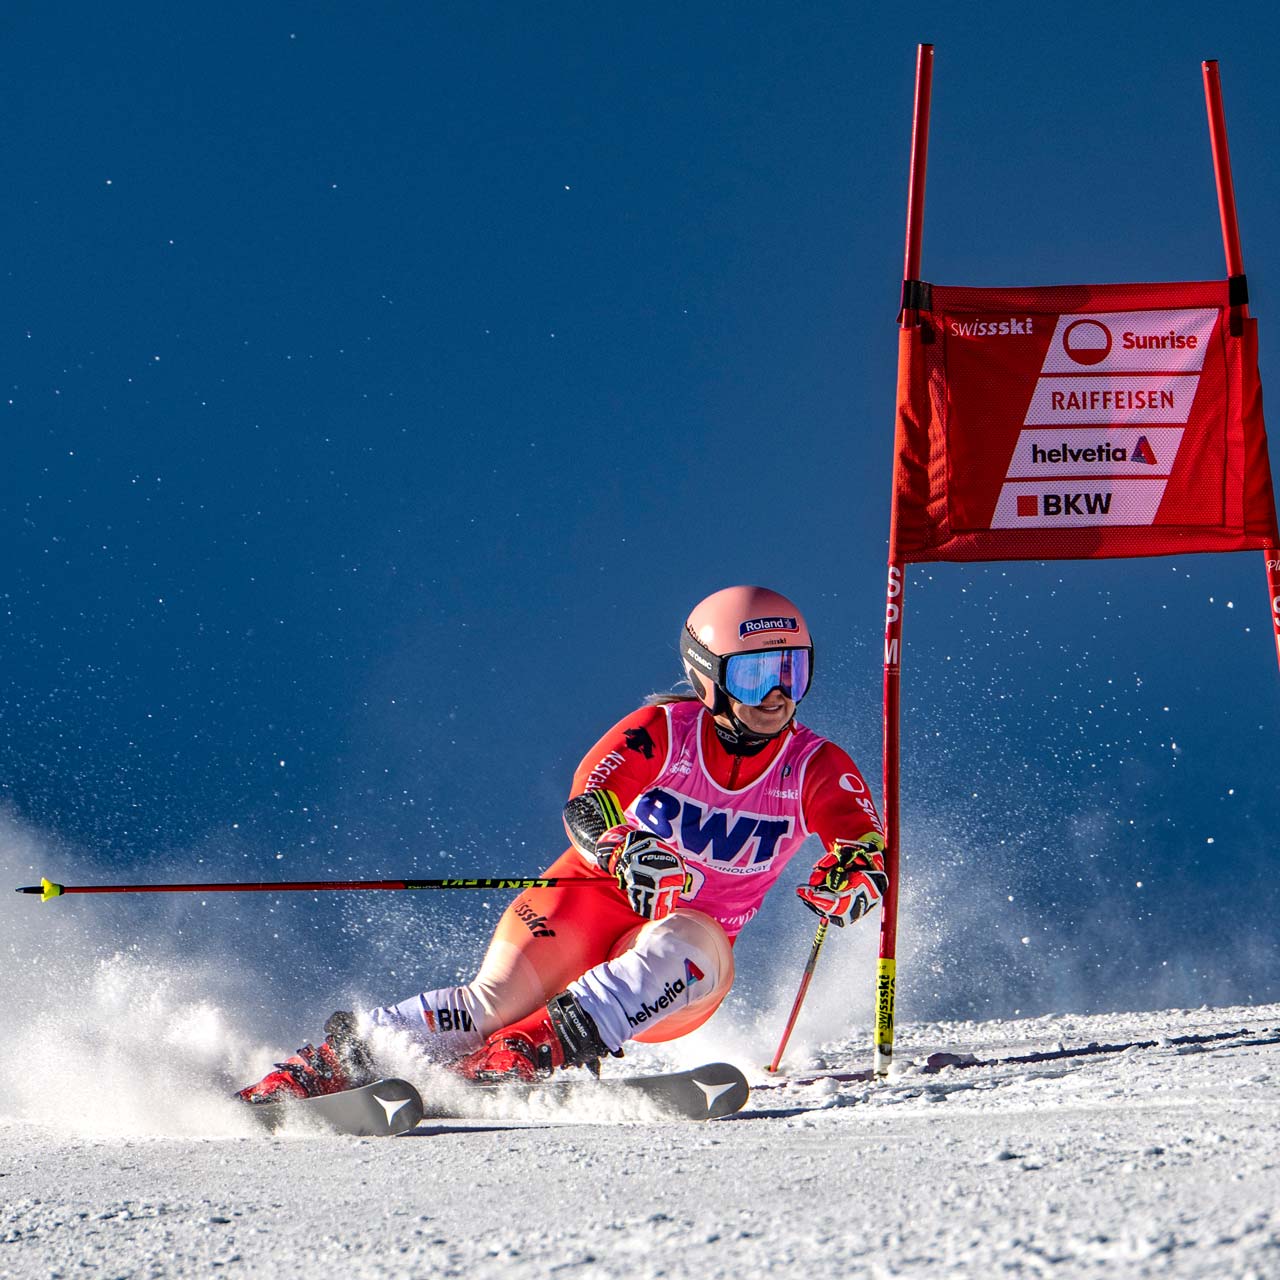 La star de Swiss Ski Joana Hählen court avec un numéro de départ BWT.